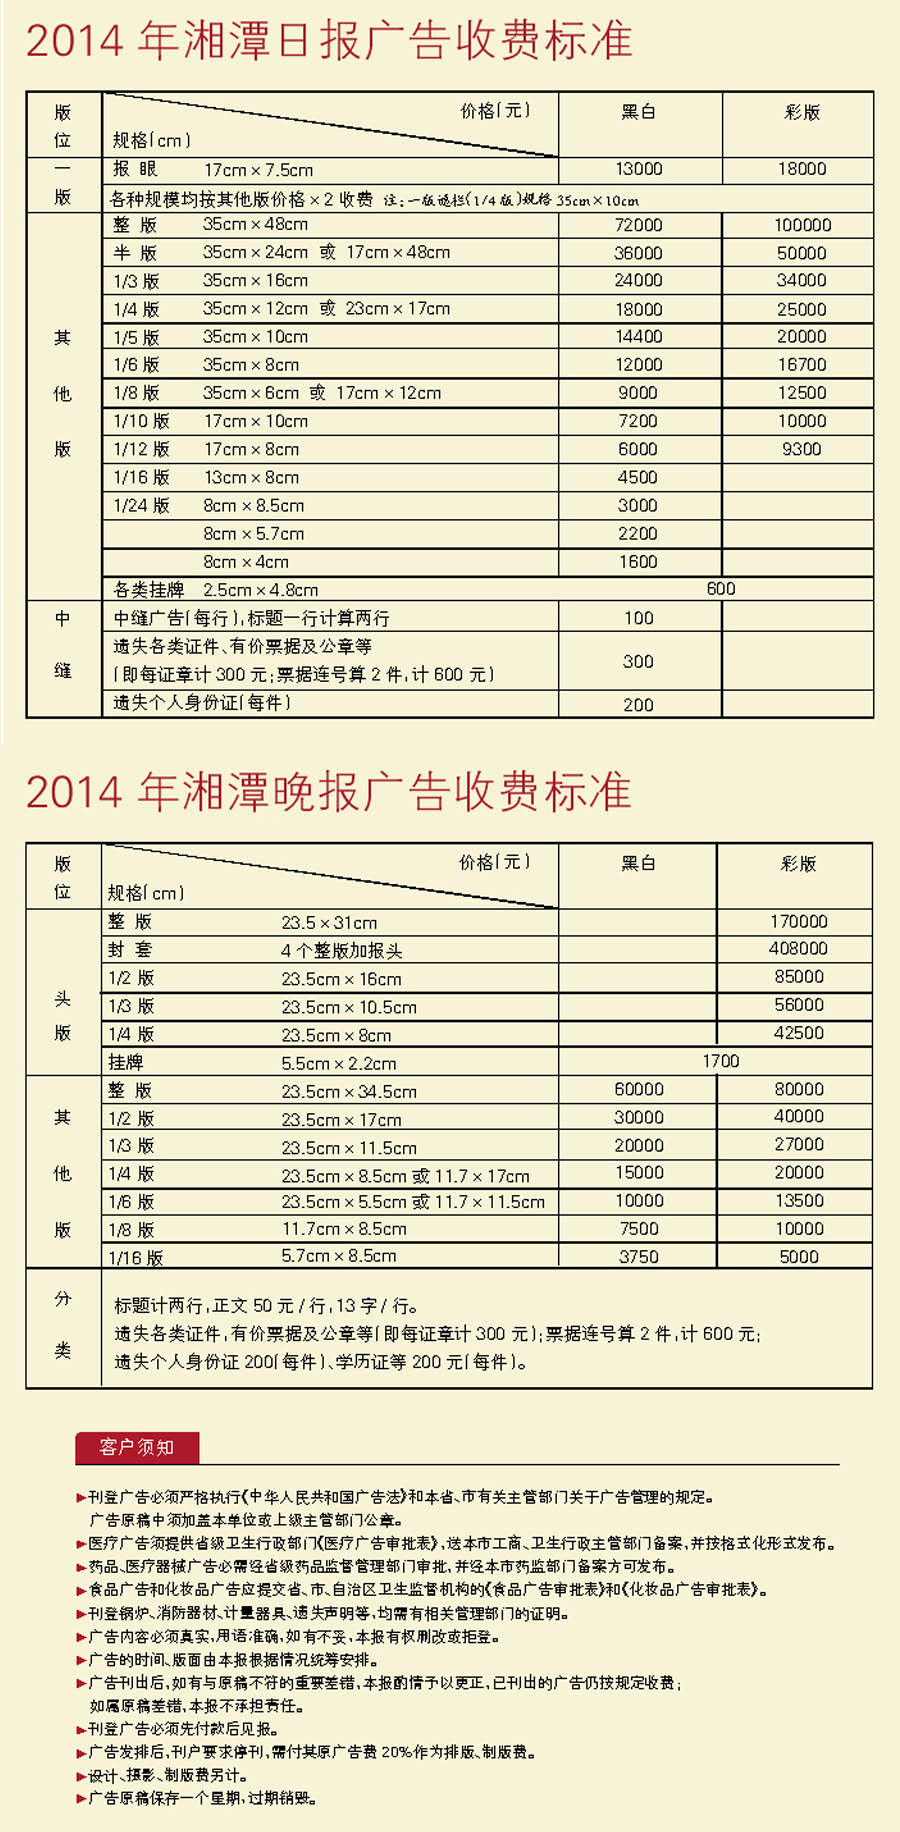 《湘潭日报》2014年广告价格